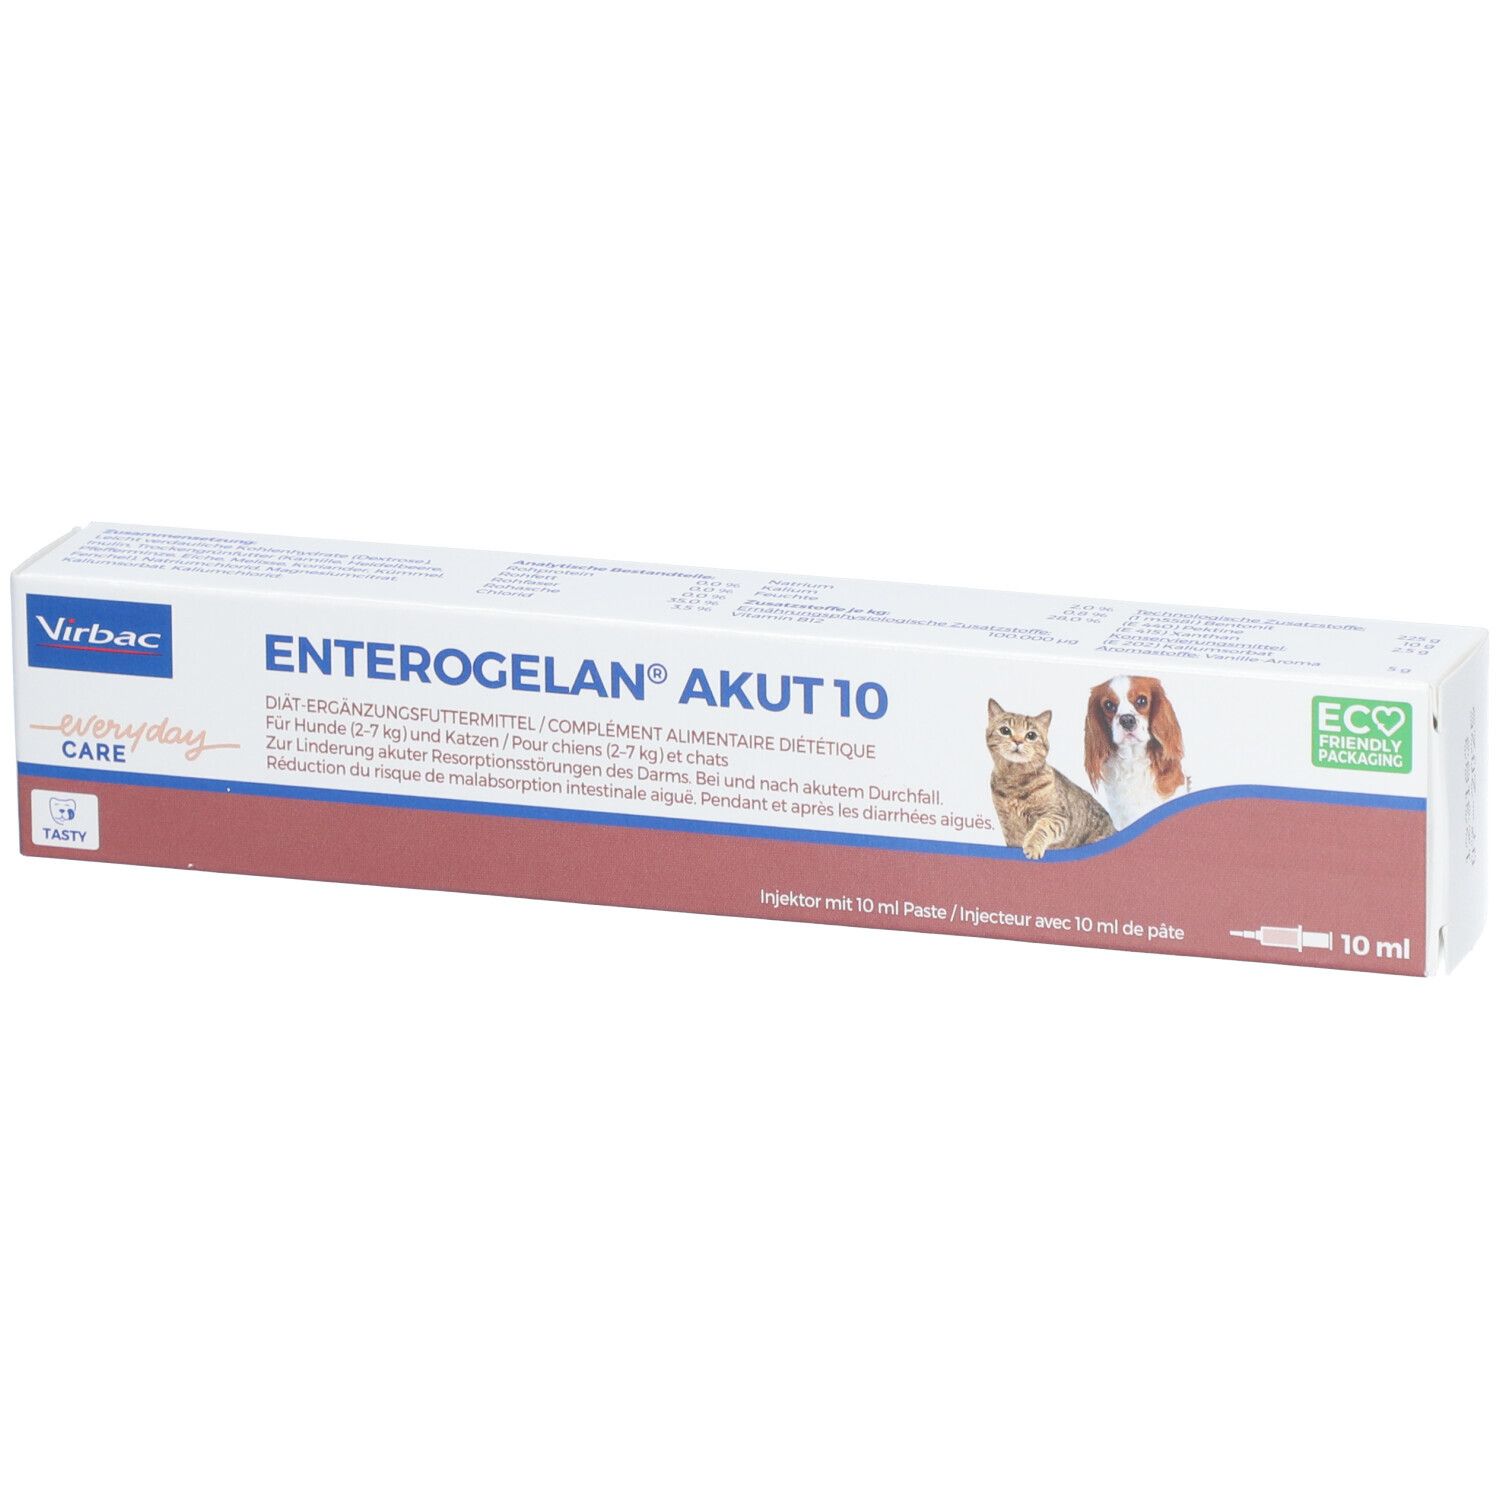 Image of Enterogelan® akut 10